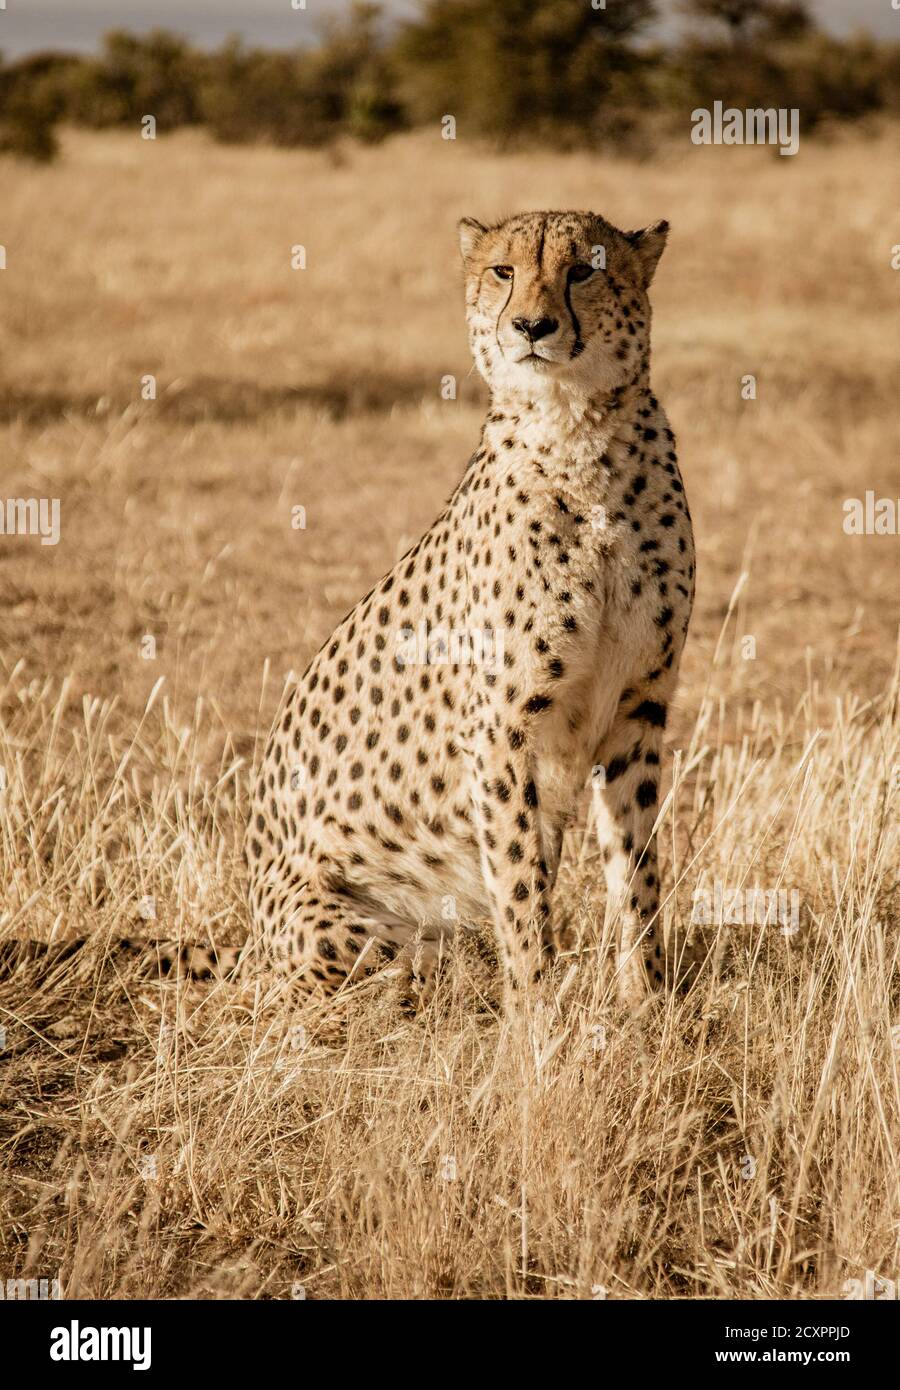 Cheetah adultes s'assied numérise son environnement en Namibie Banque D'Images